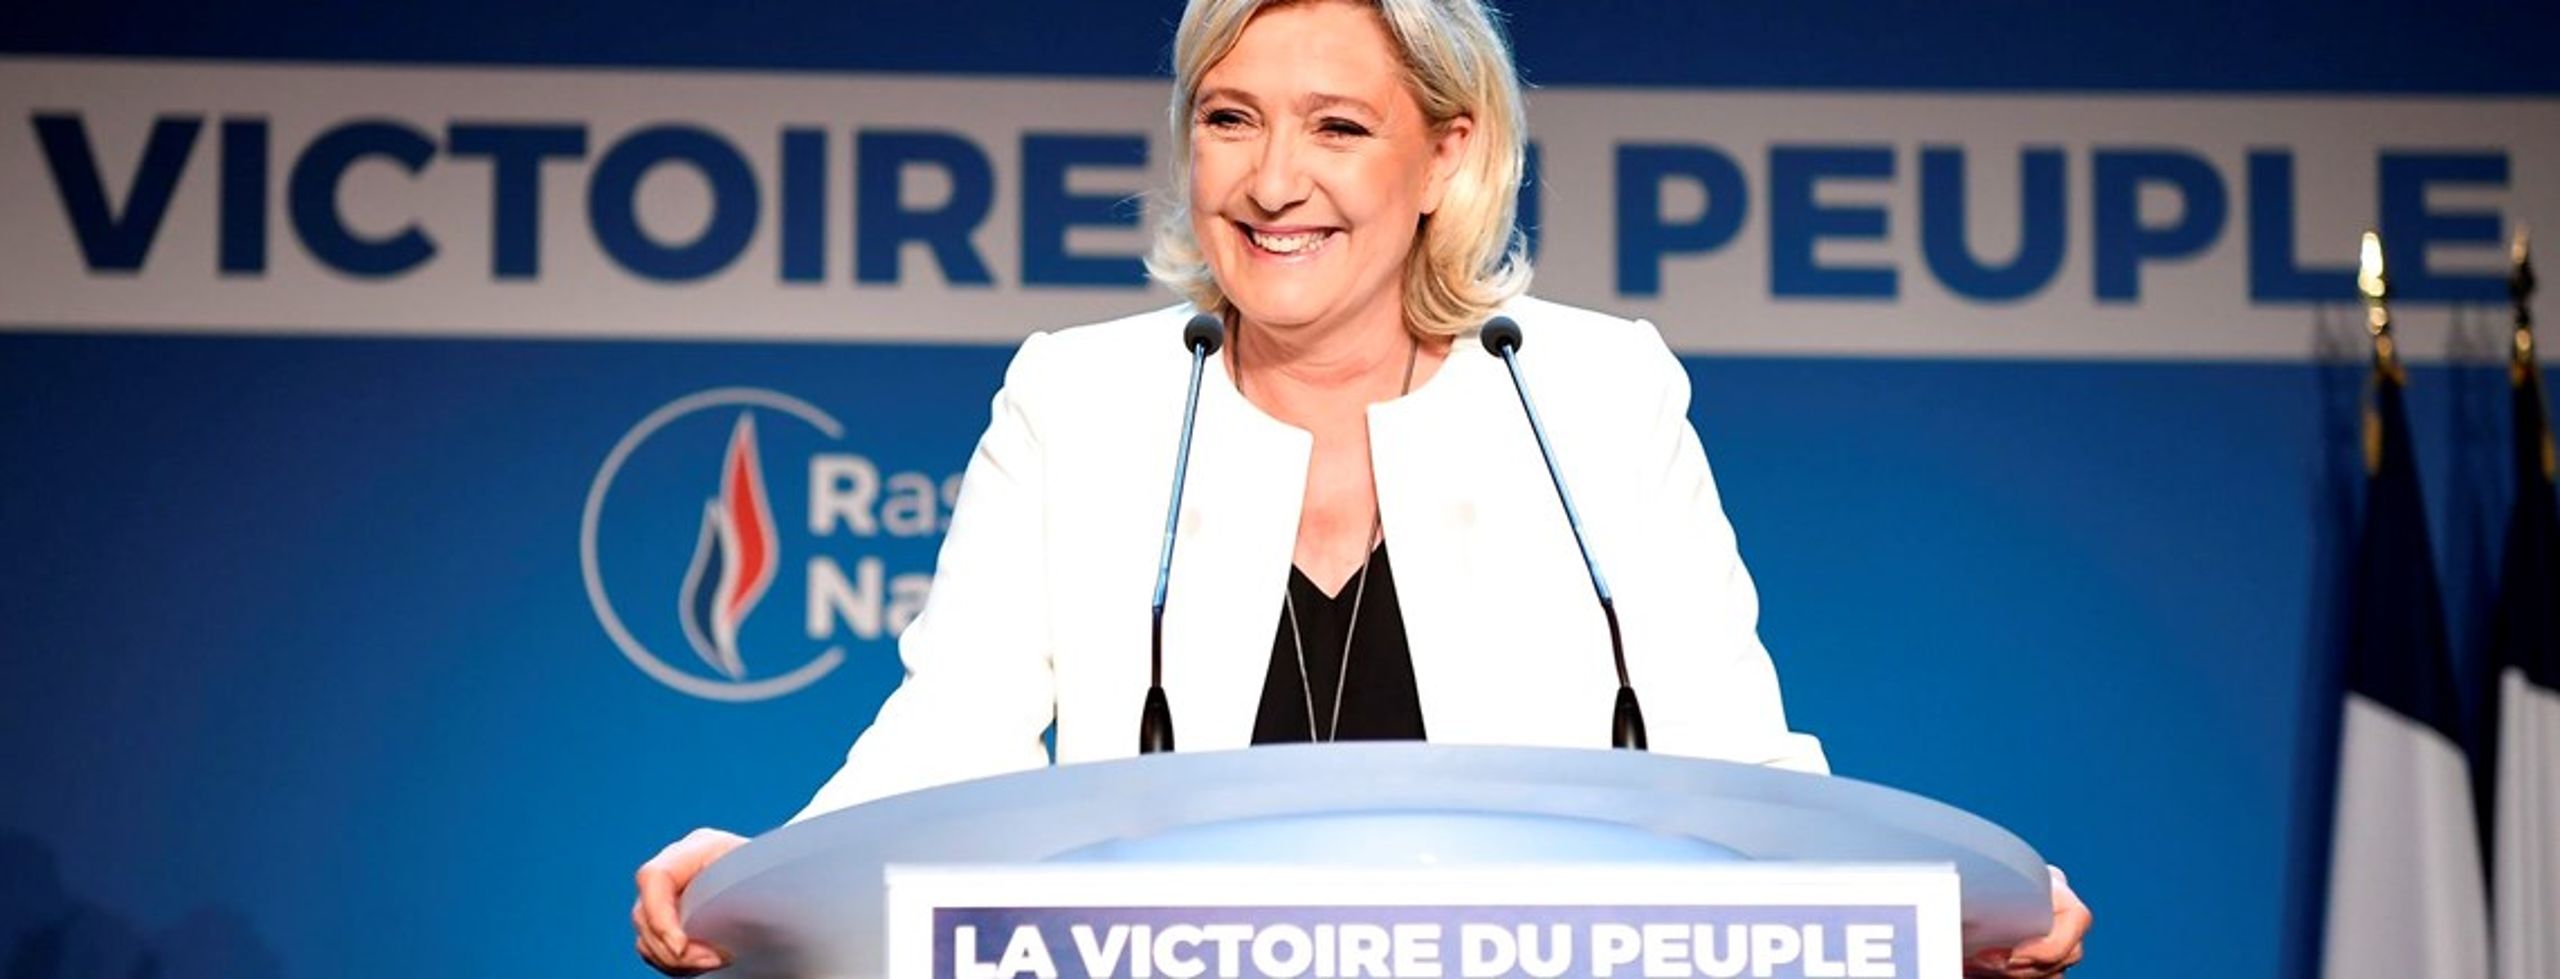 Marine Le Pen under söndagskvällen då resultatet för Europaparlamentsvalet presenterades. Le Pens parti Nationell Samling blev det vinnande partiet i Frankrikes EU-val.